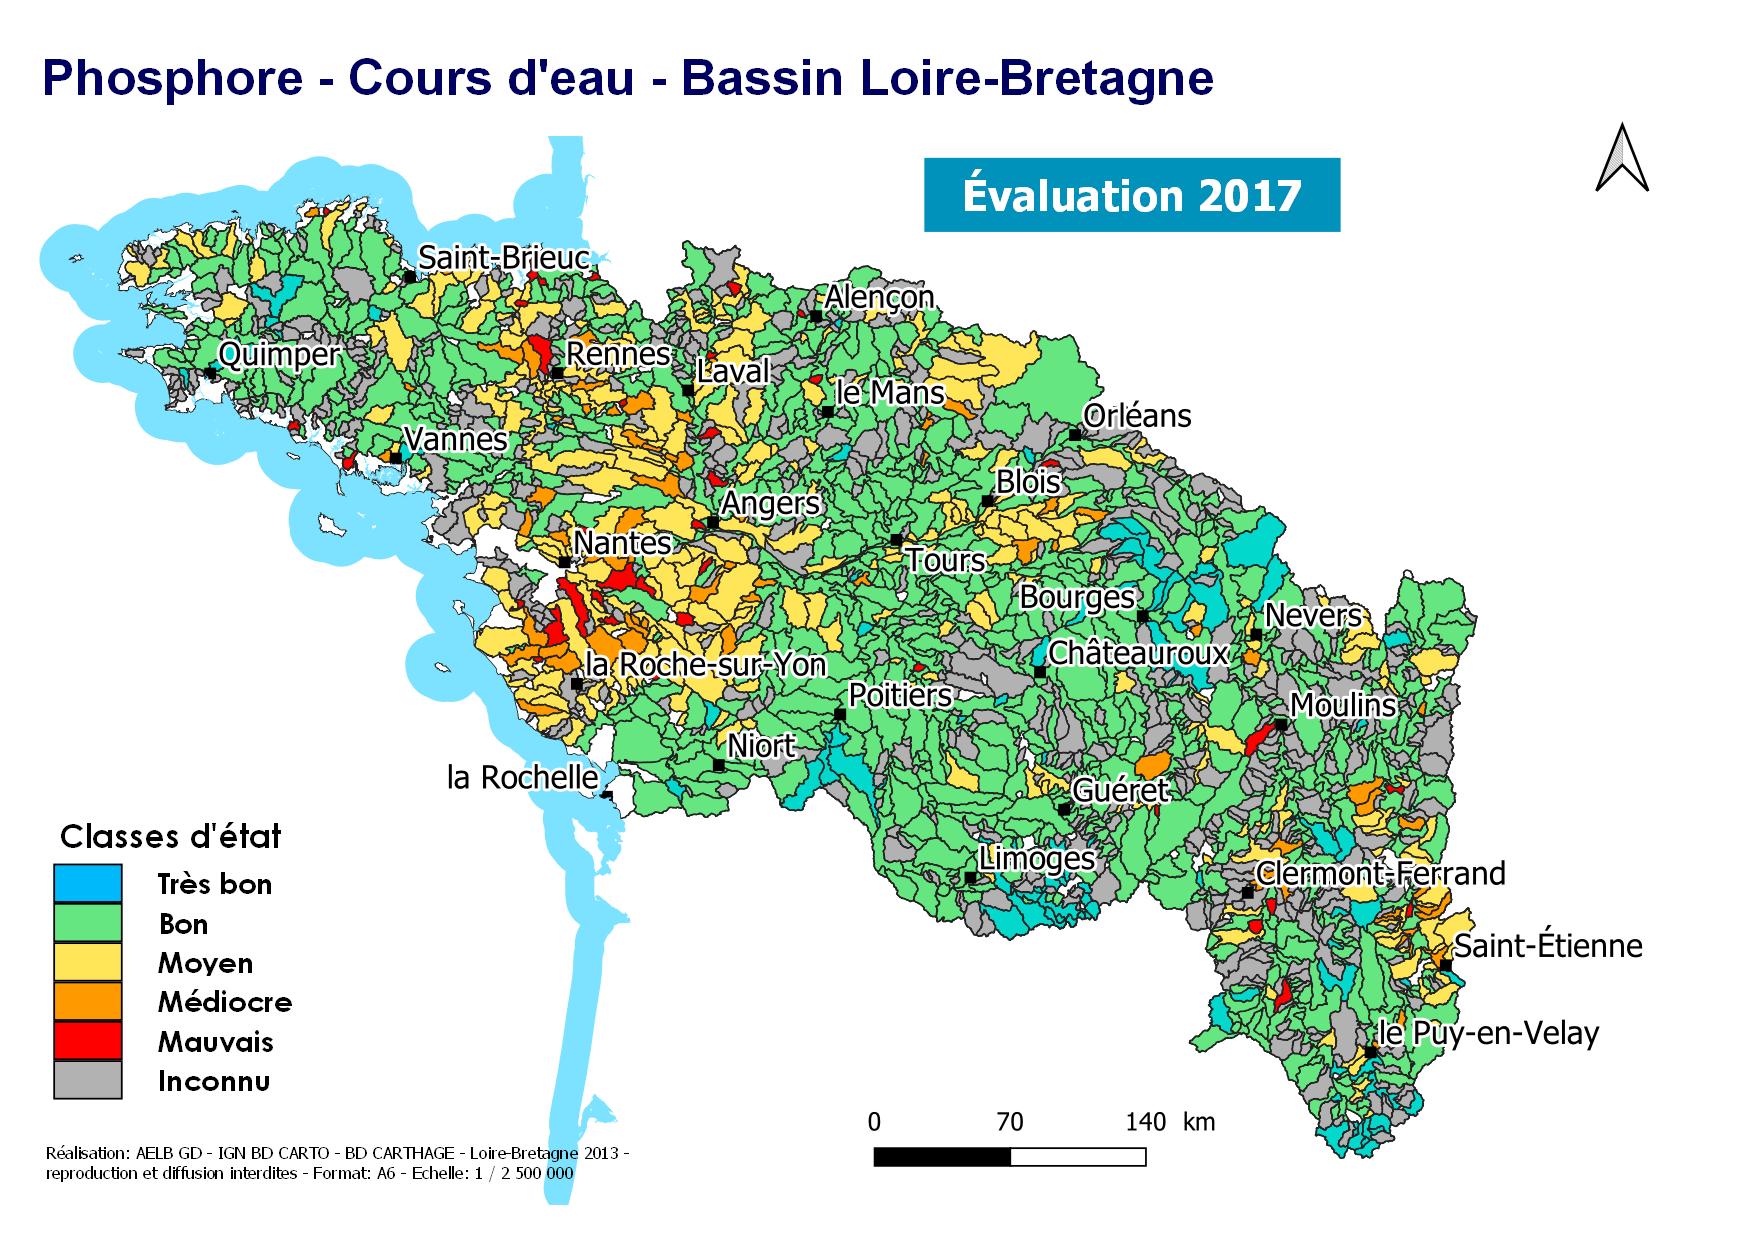 Évaluation 2017 pour le phosphore de l'état des cours d'eau en Loire-Bretagne